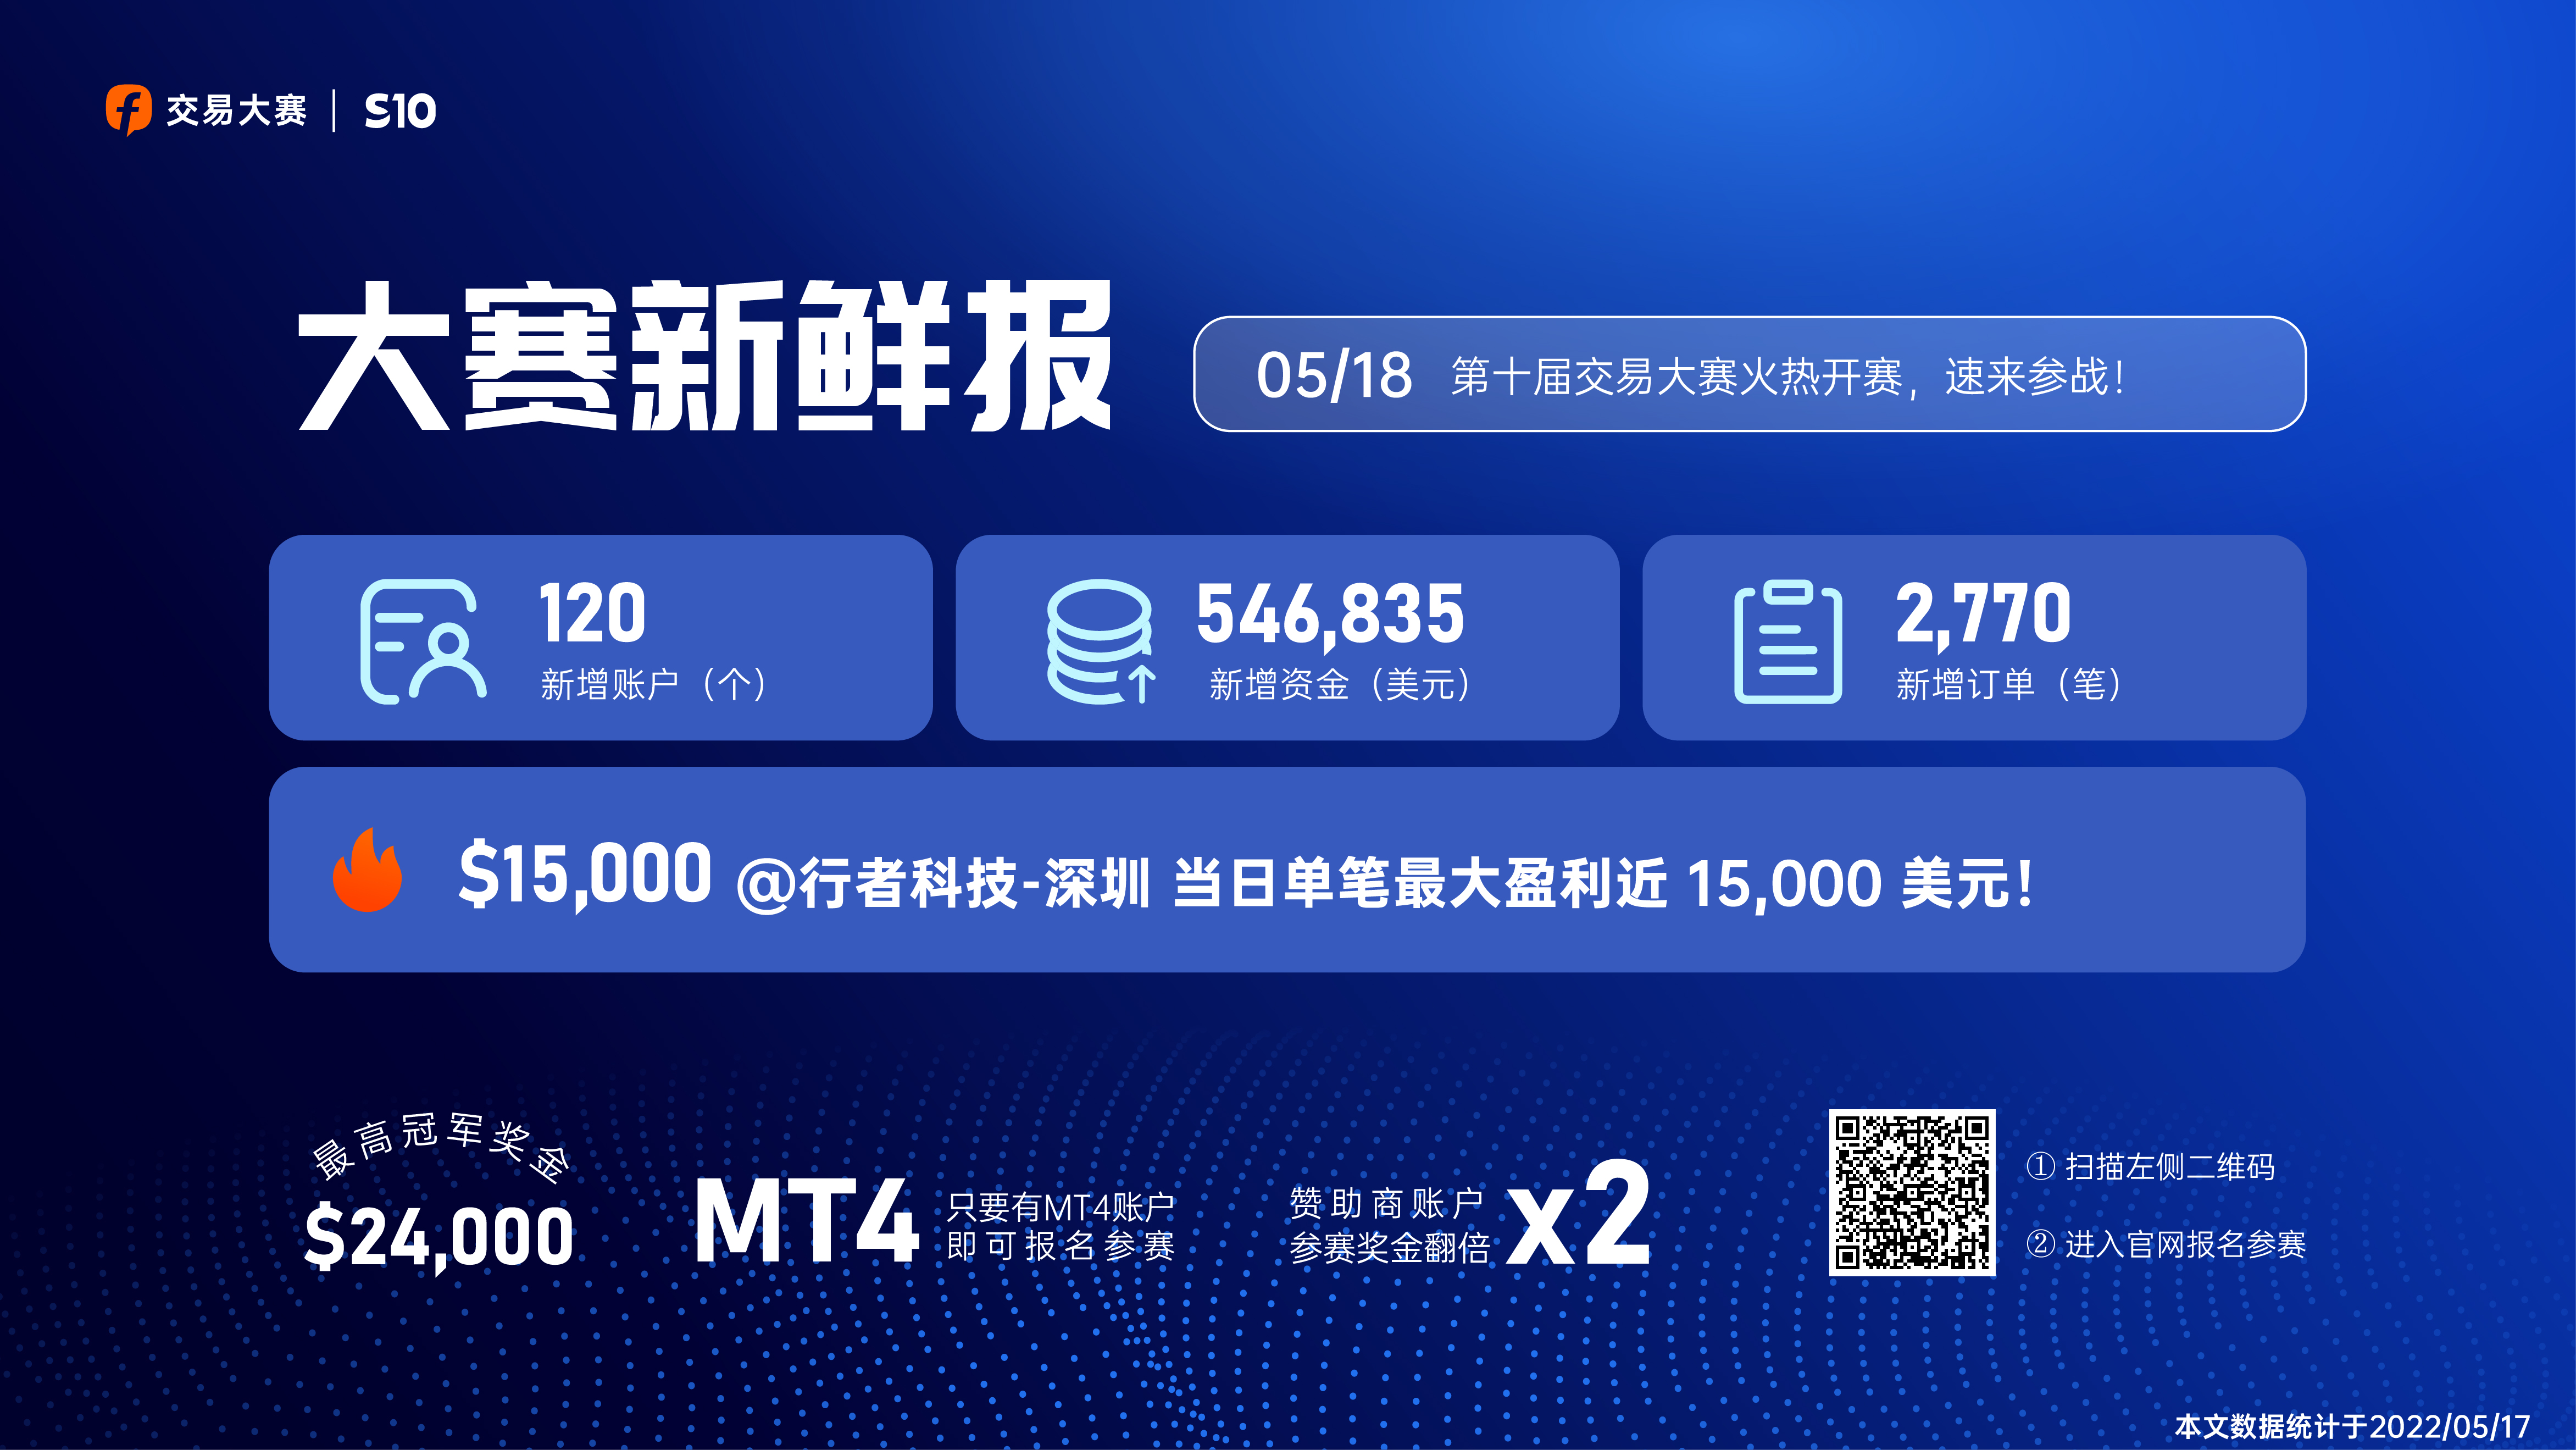 0518大赛新鲜报丨@行者科技-深圳 当日单笔最大盈利近 15,000 美元！